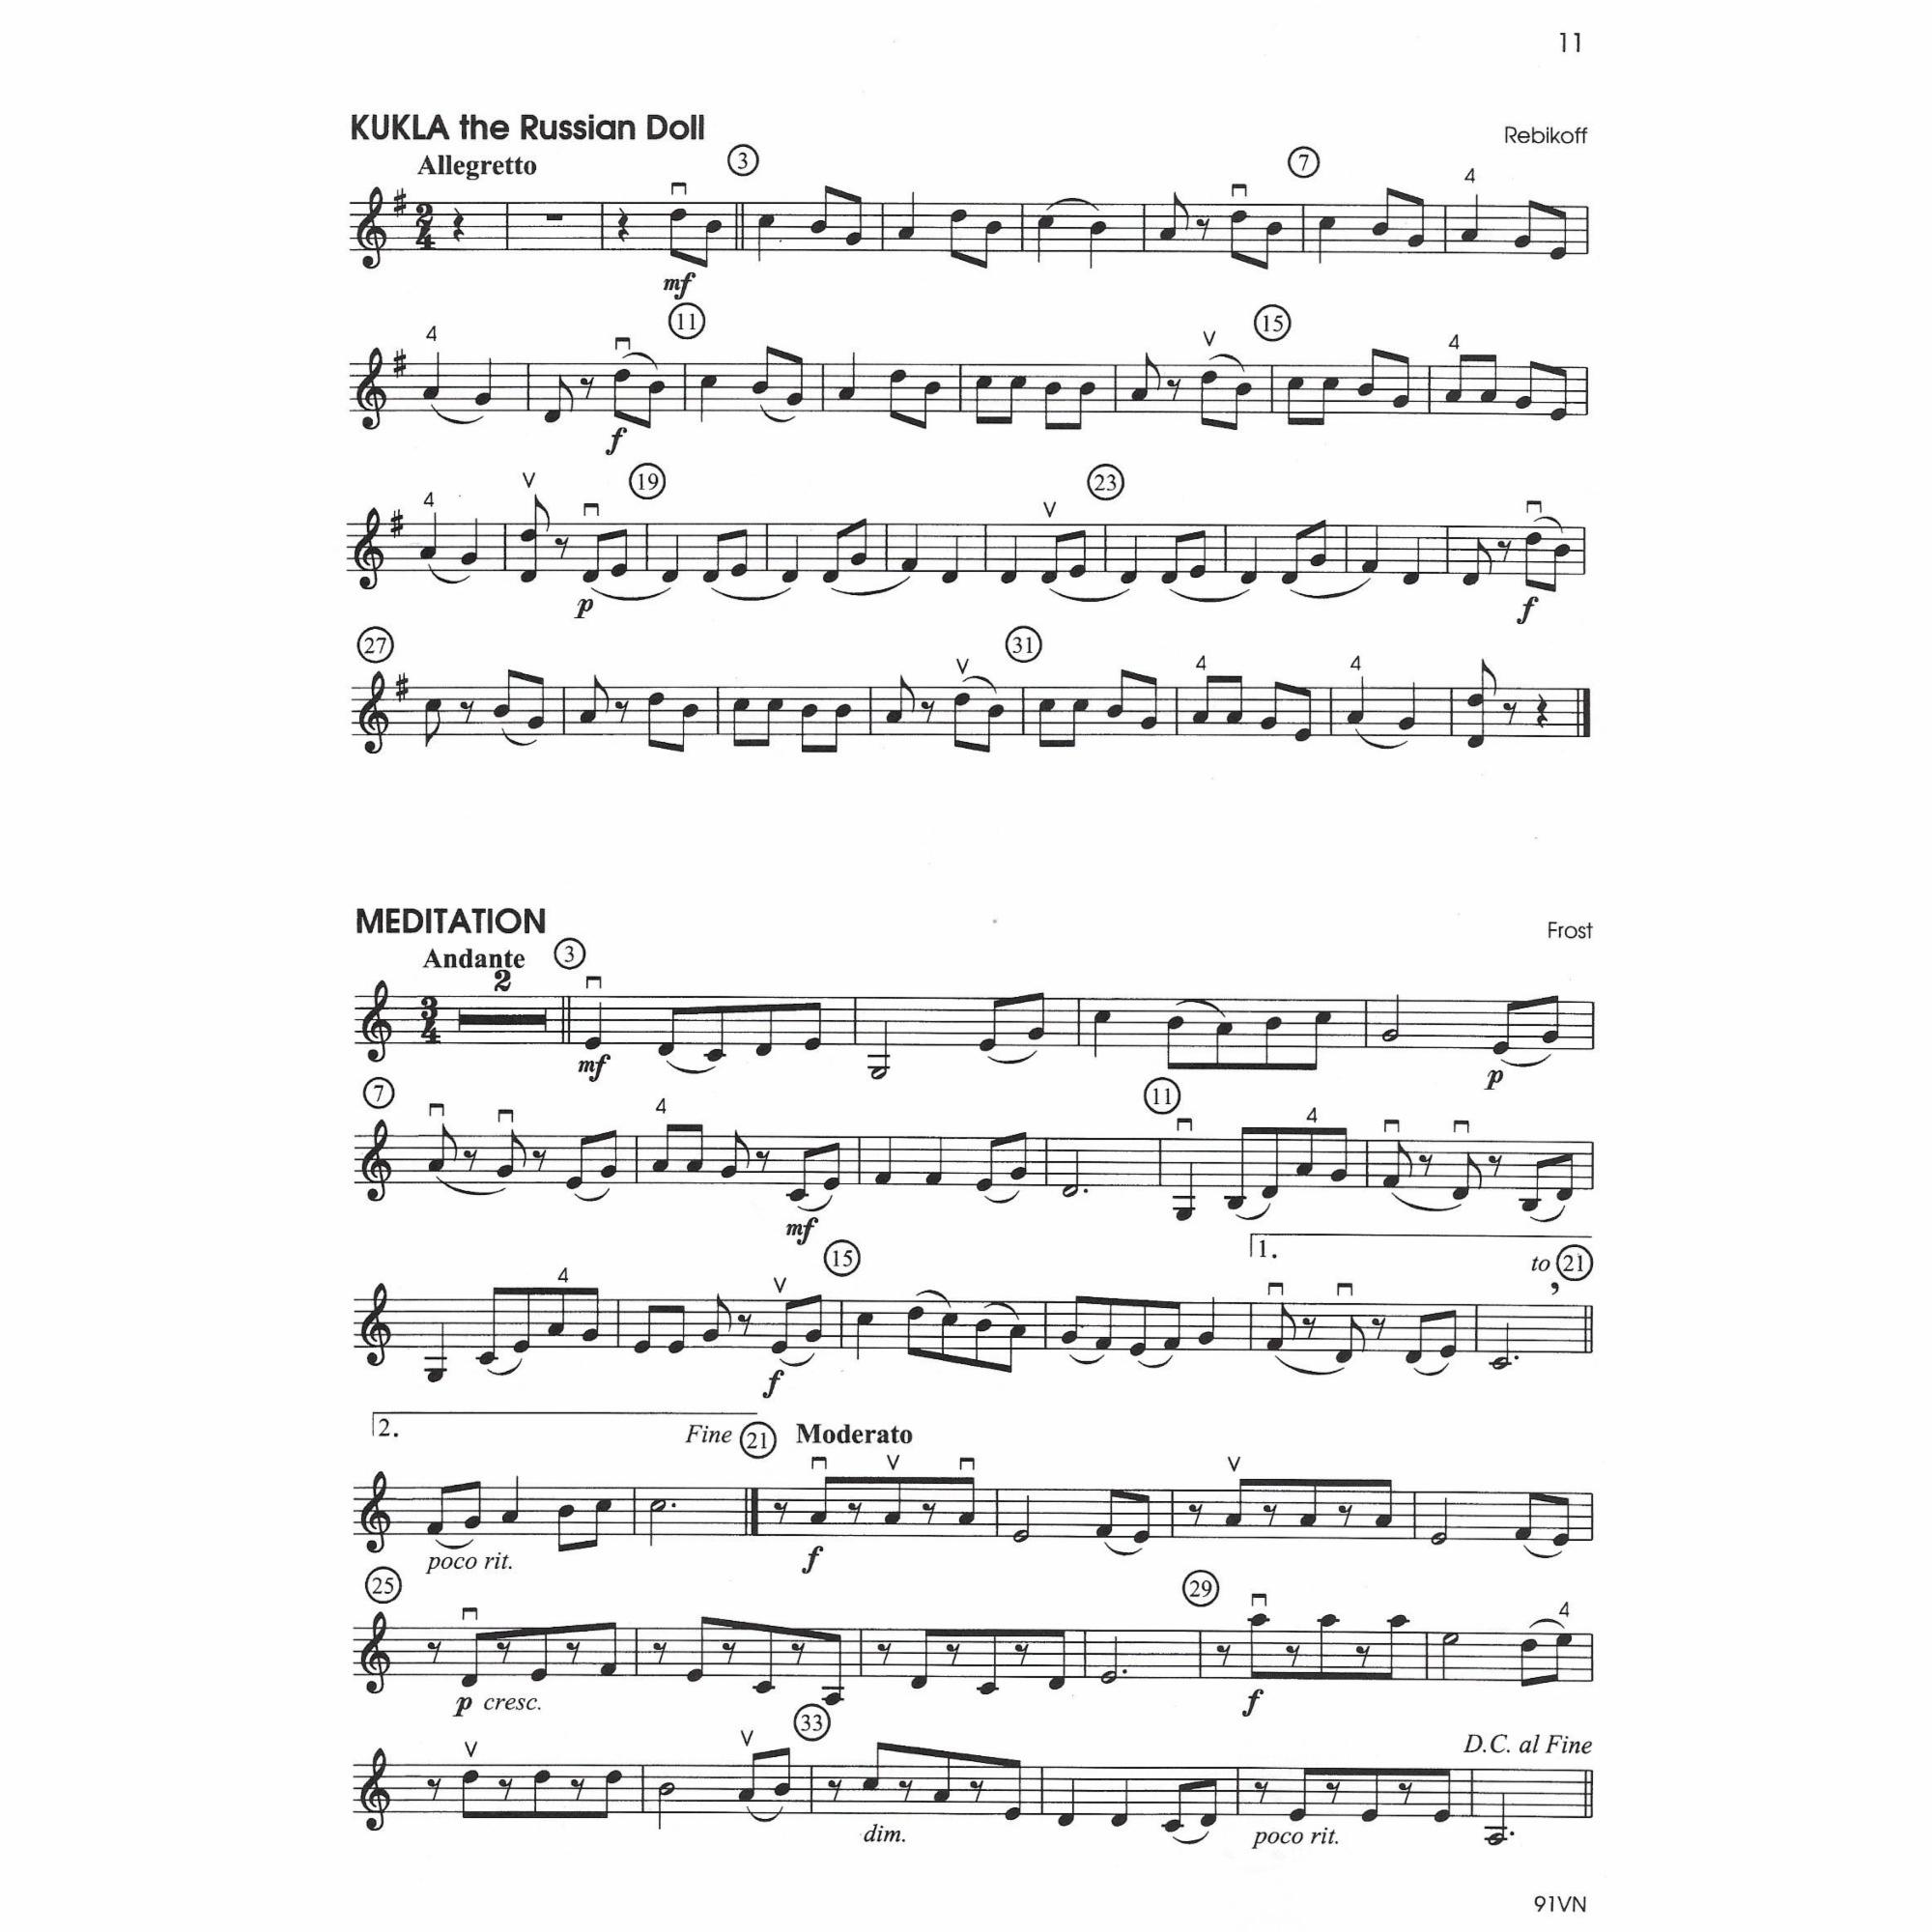 Sample: Violin (Pg. 11)